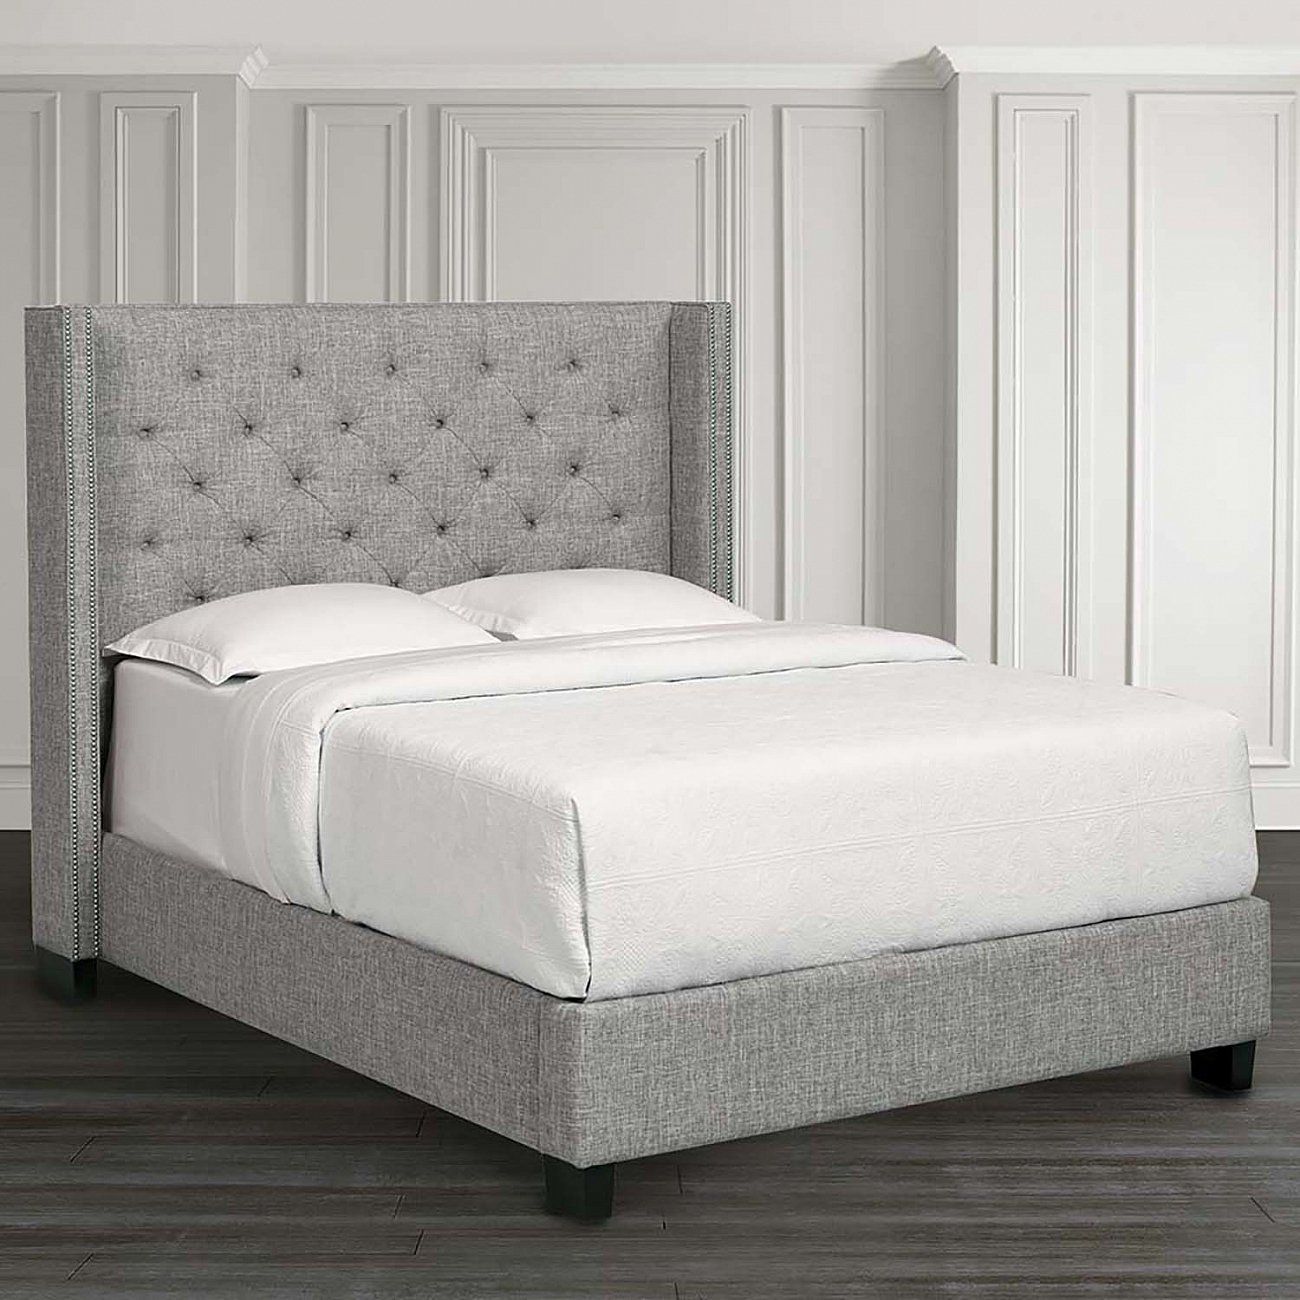 Кровать двуспальная с мягким изголовьем 160х200 см темно-серая Wing